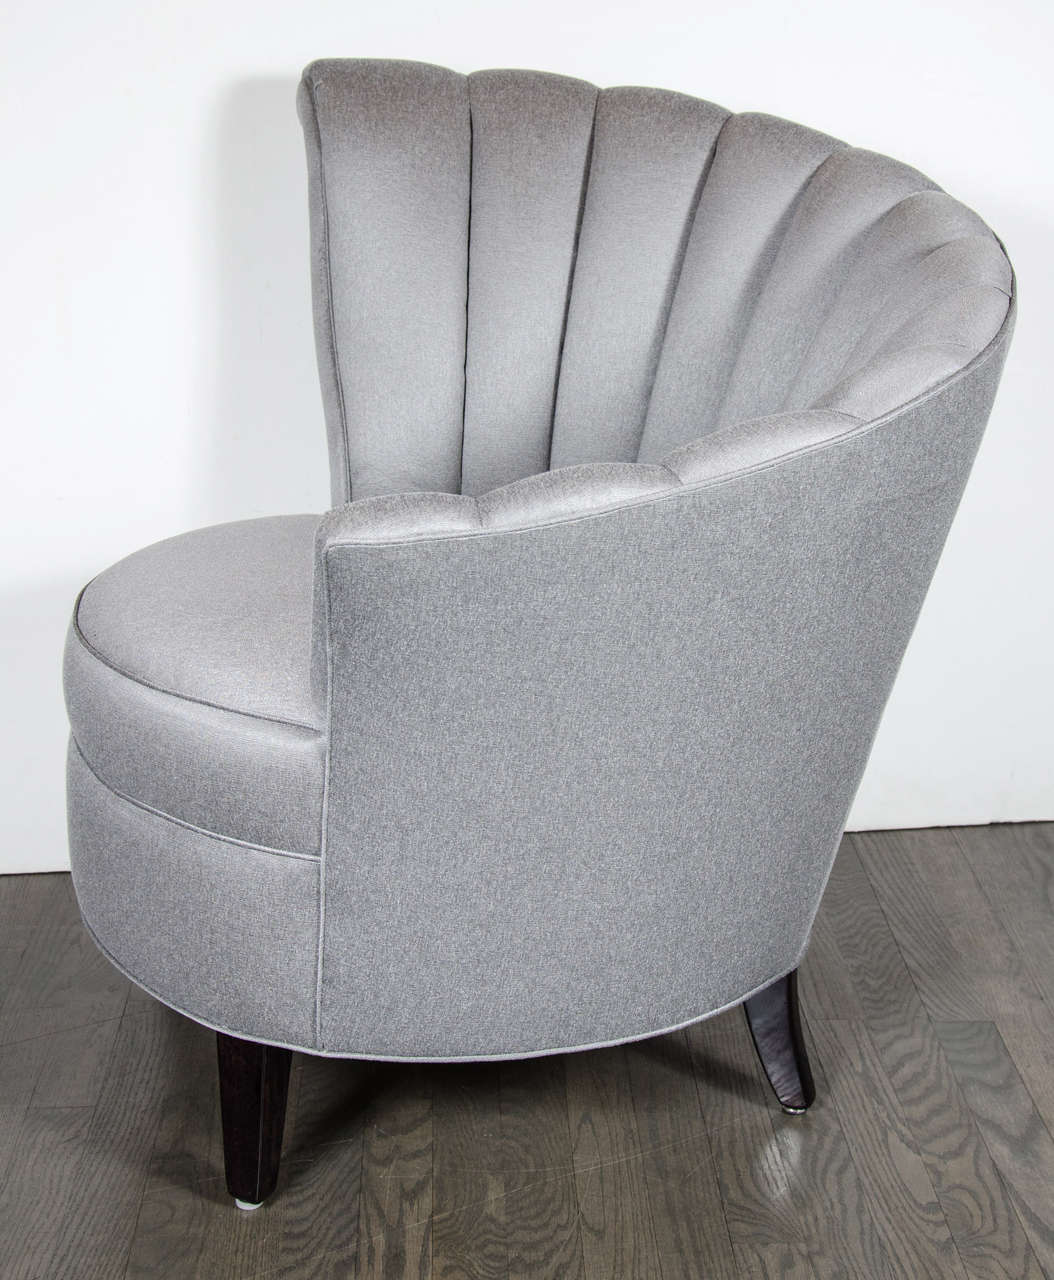 asymmetrical chair